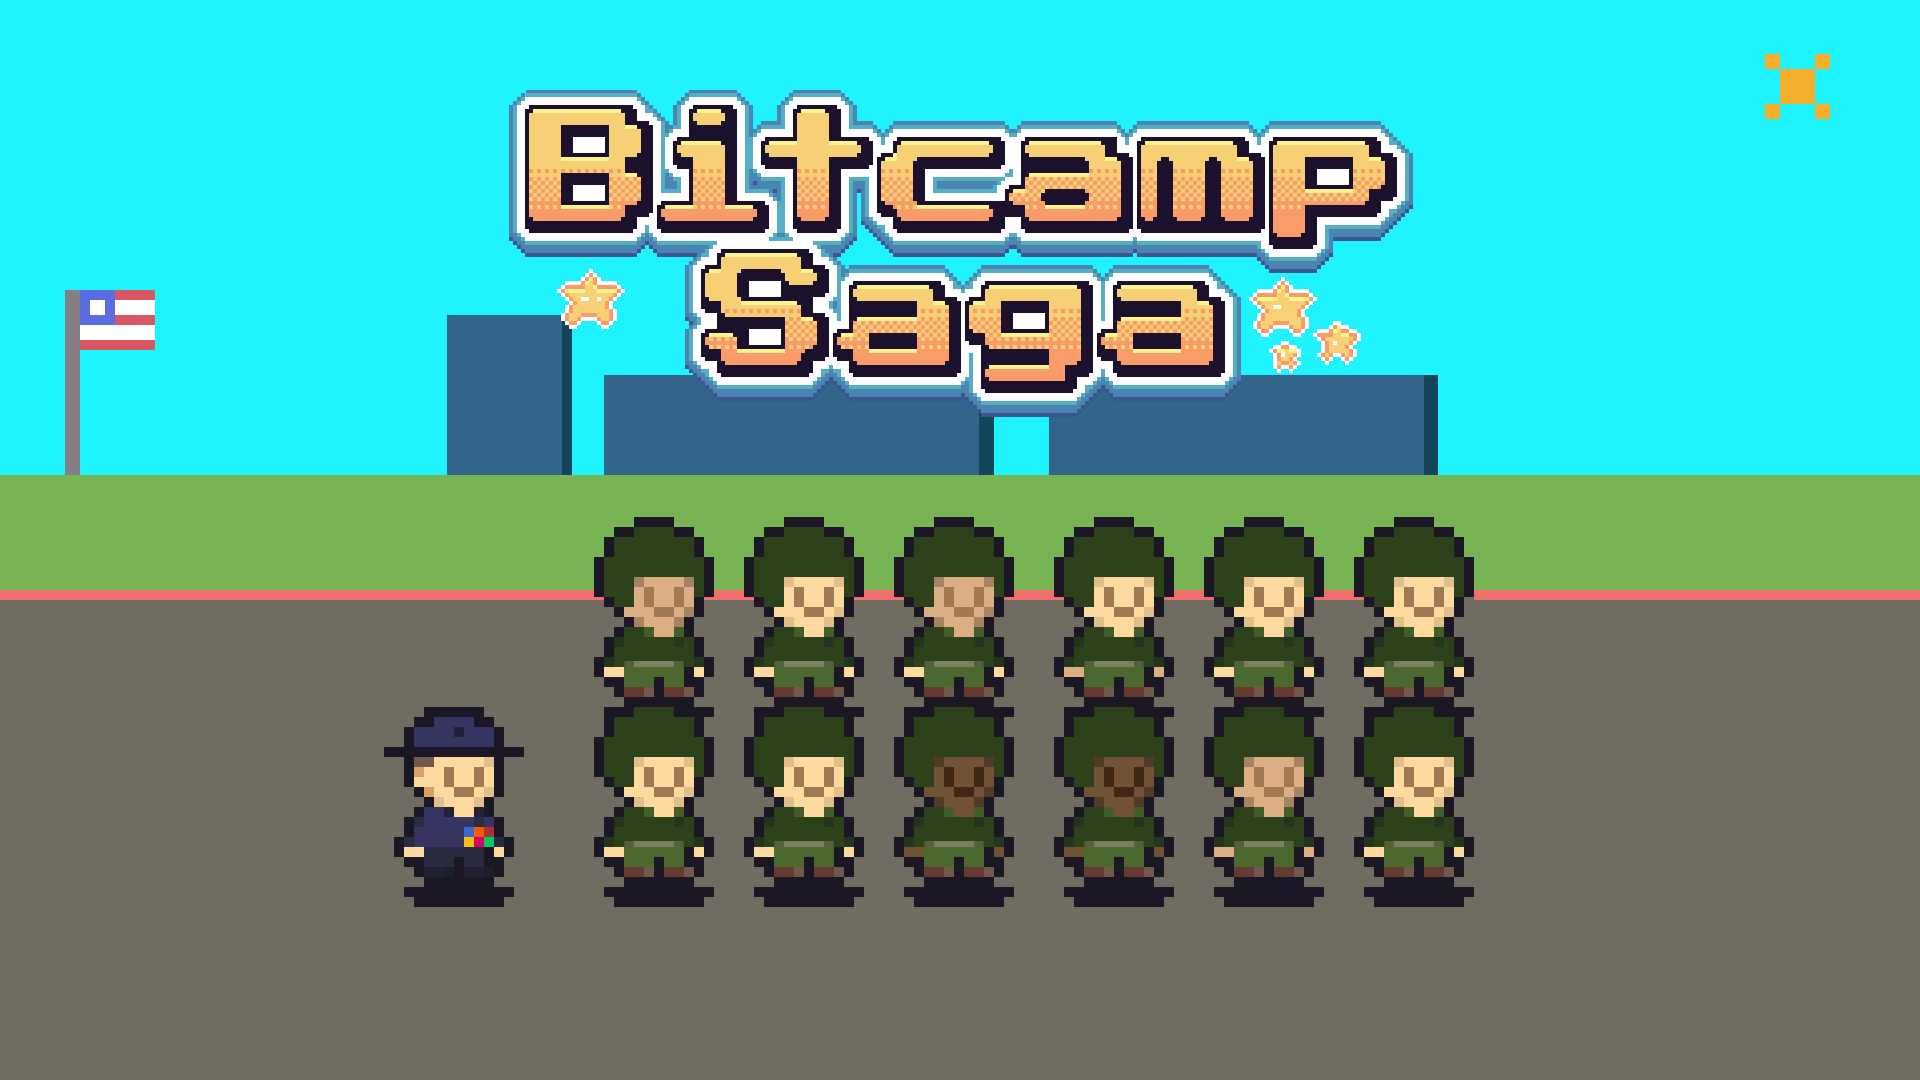 Bitcamp Saga - Hilarious Drill Instructor Game